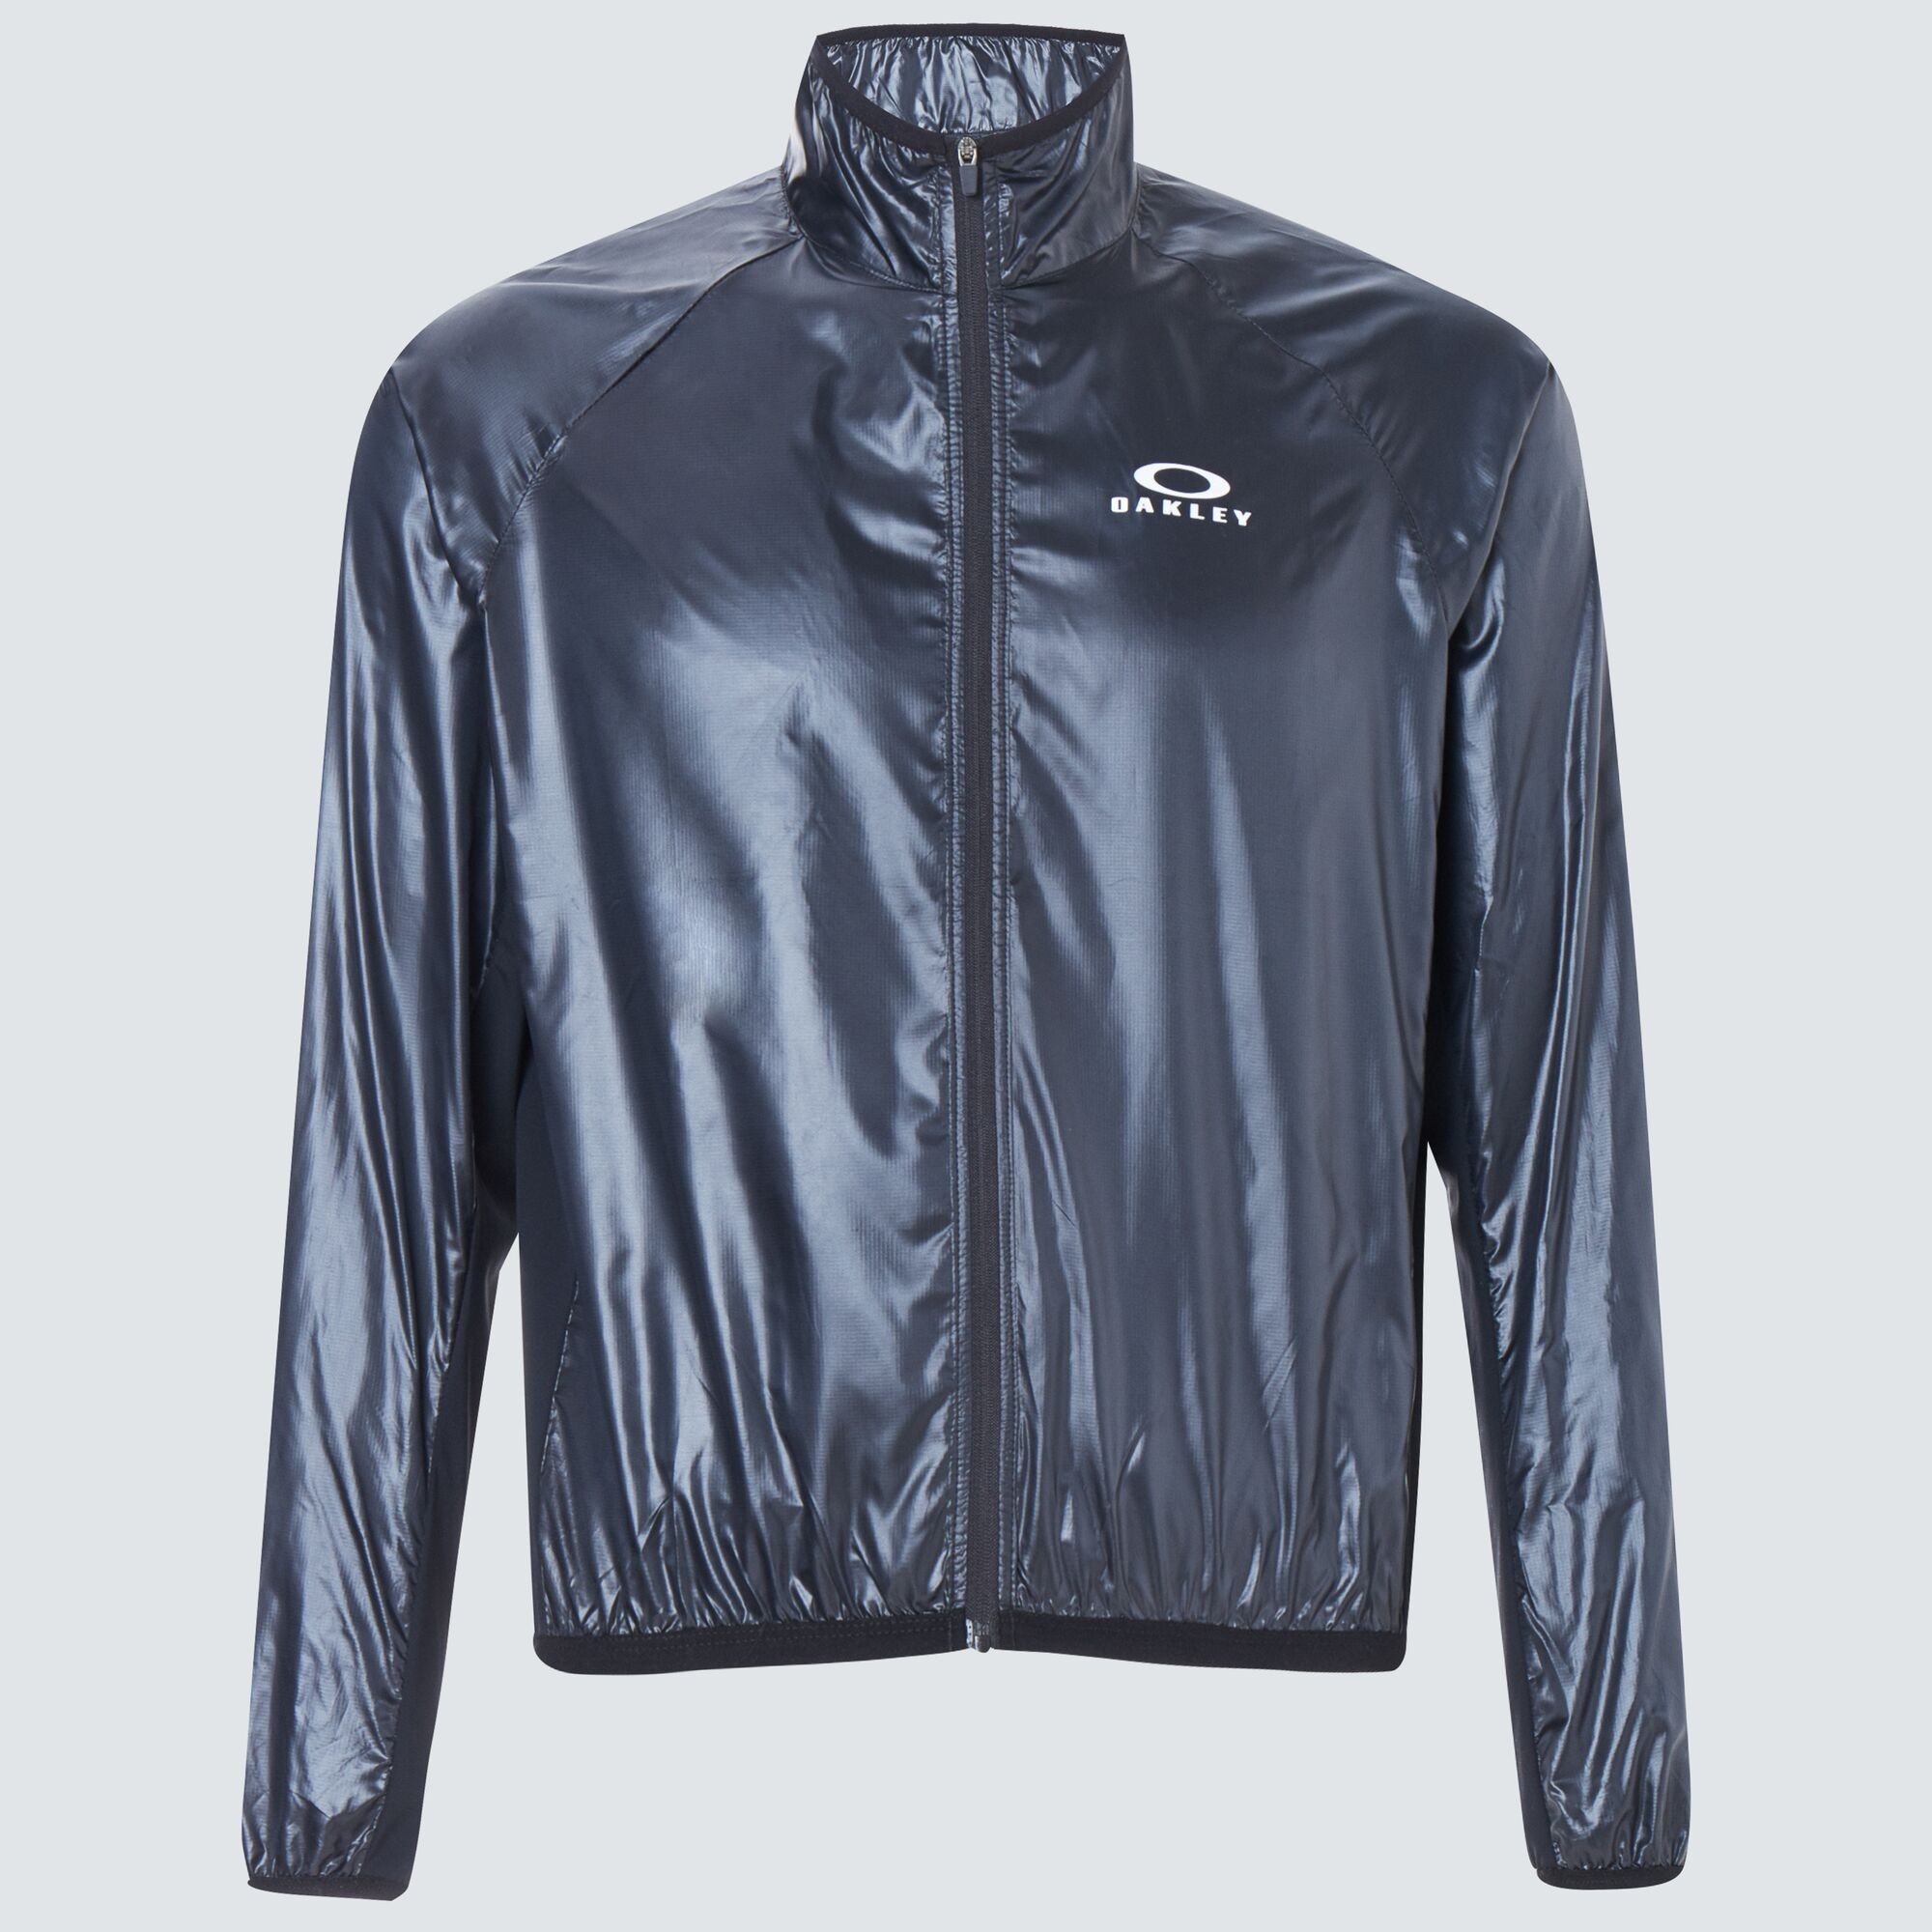 Oakley Enhance Synchronism Jacket 3.0 - Uniform Gray